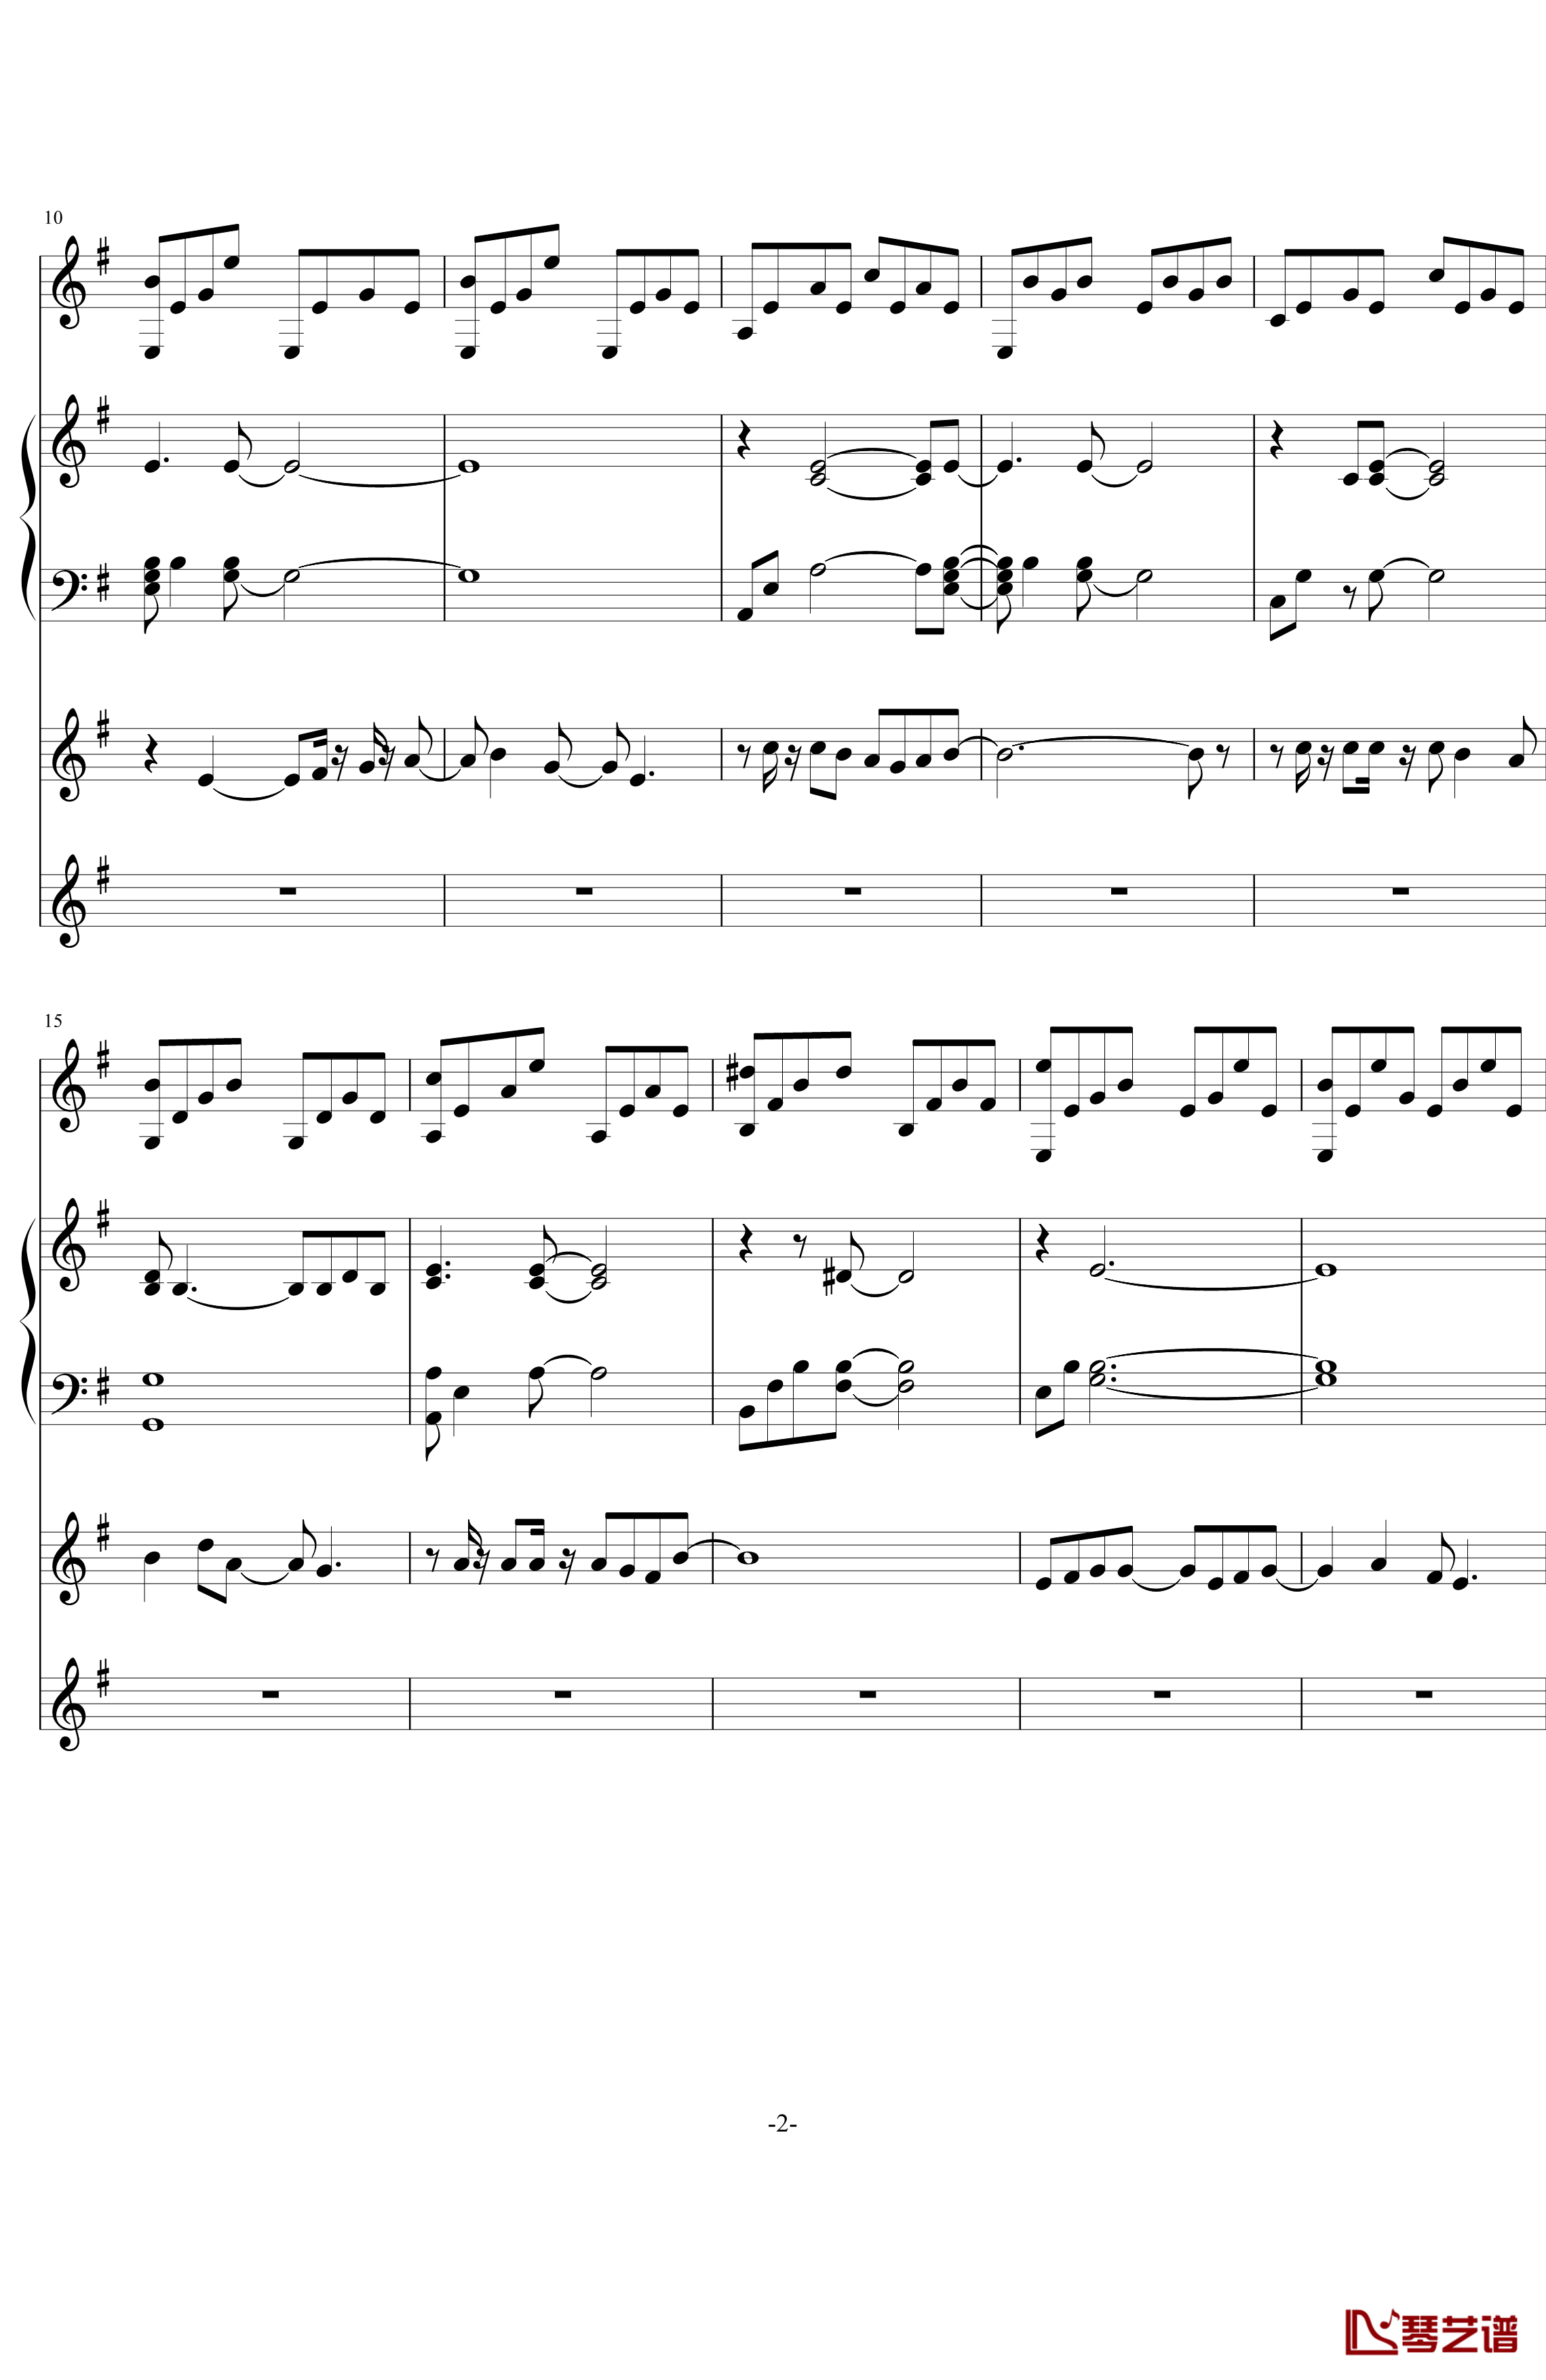 中提琴协奏版钢琴谱-含有钢琴独奏-老奠2